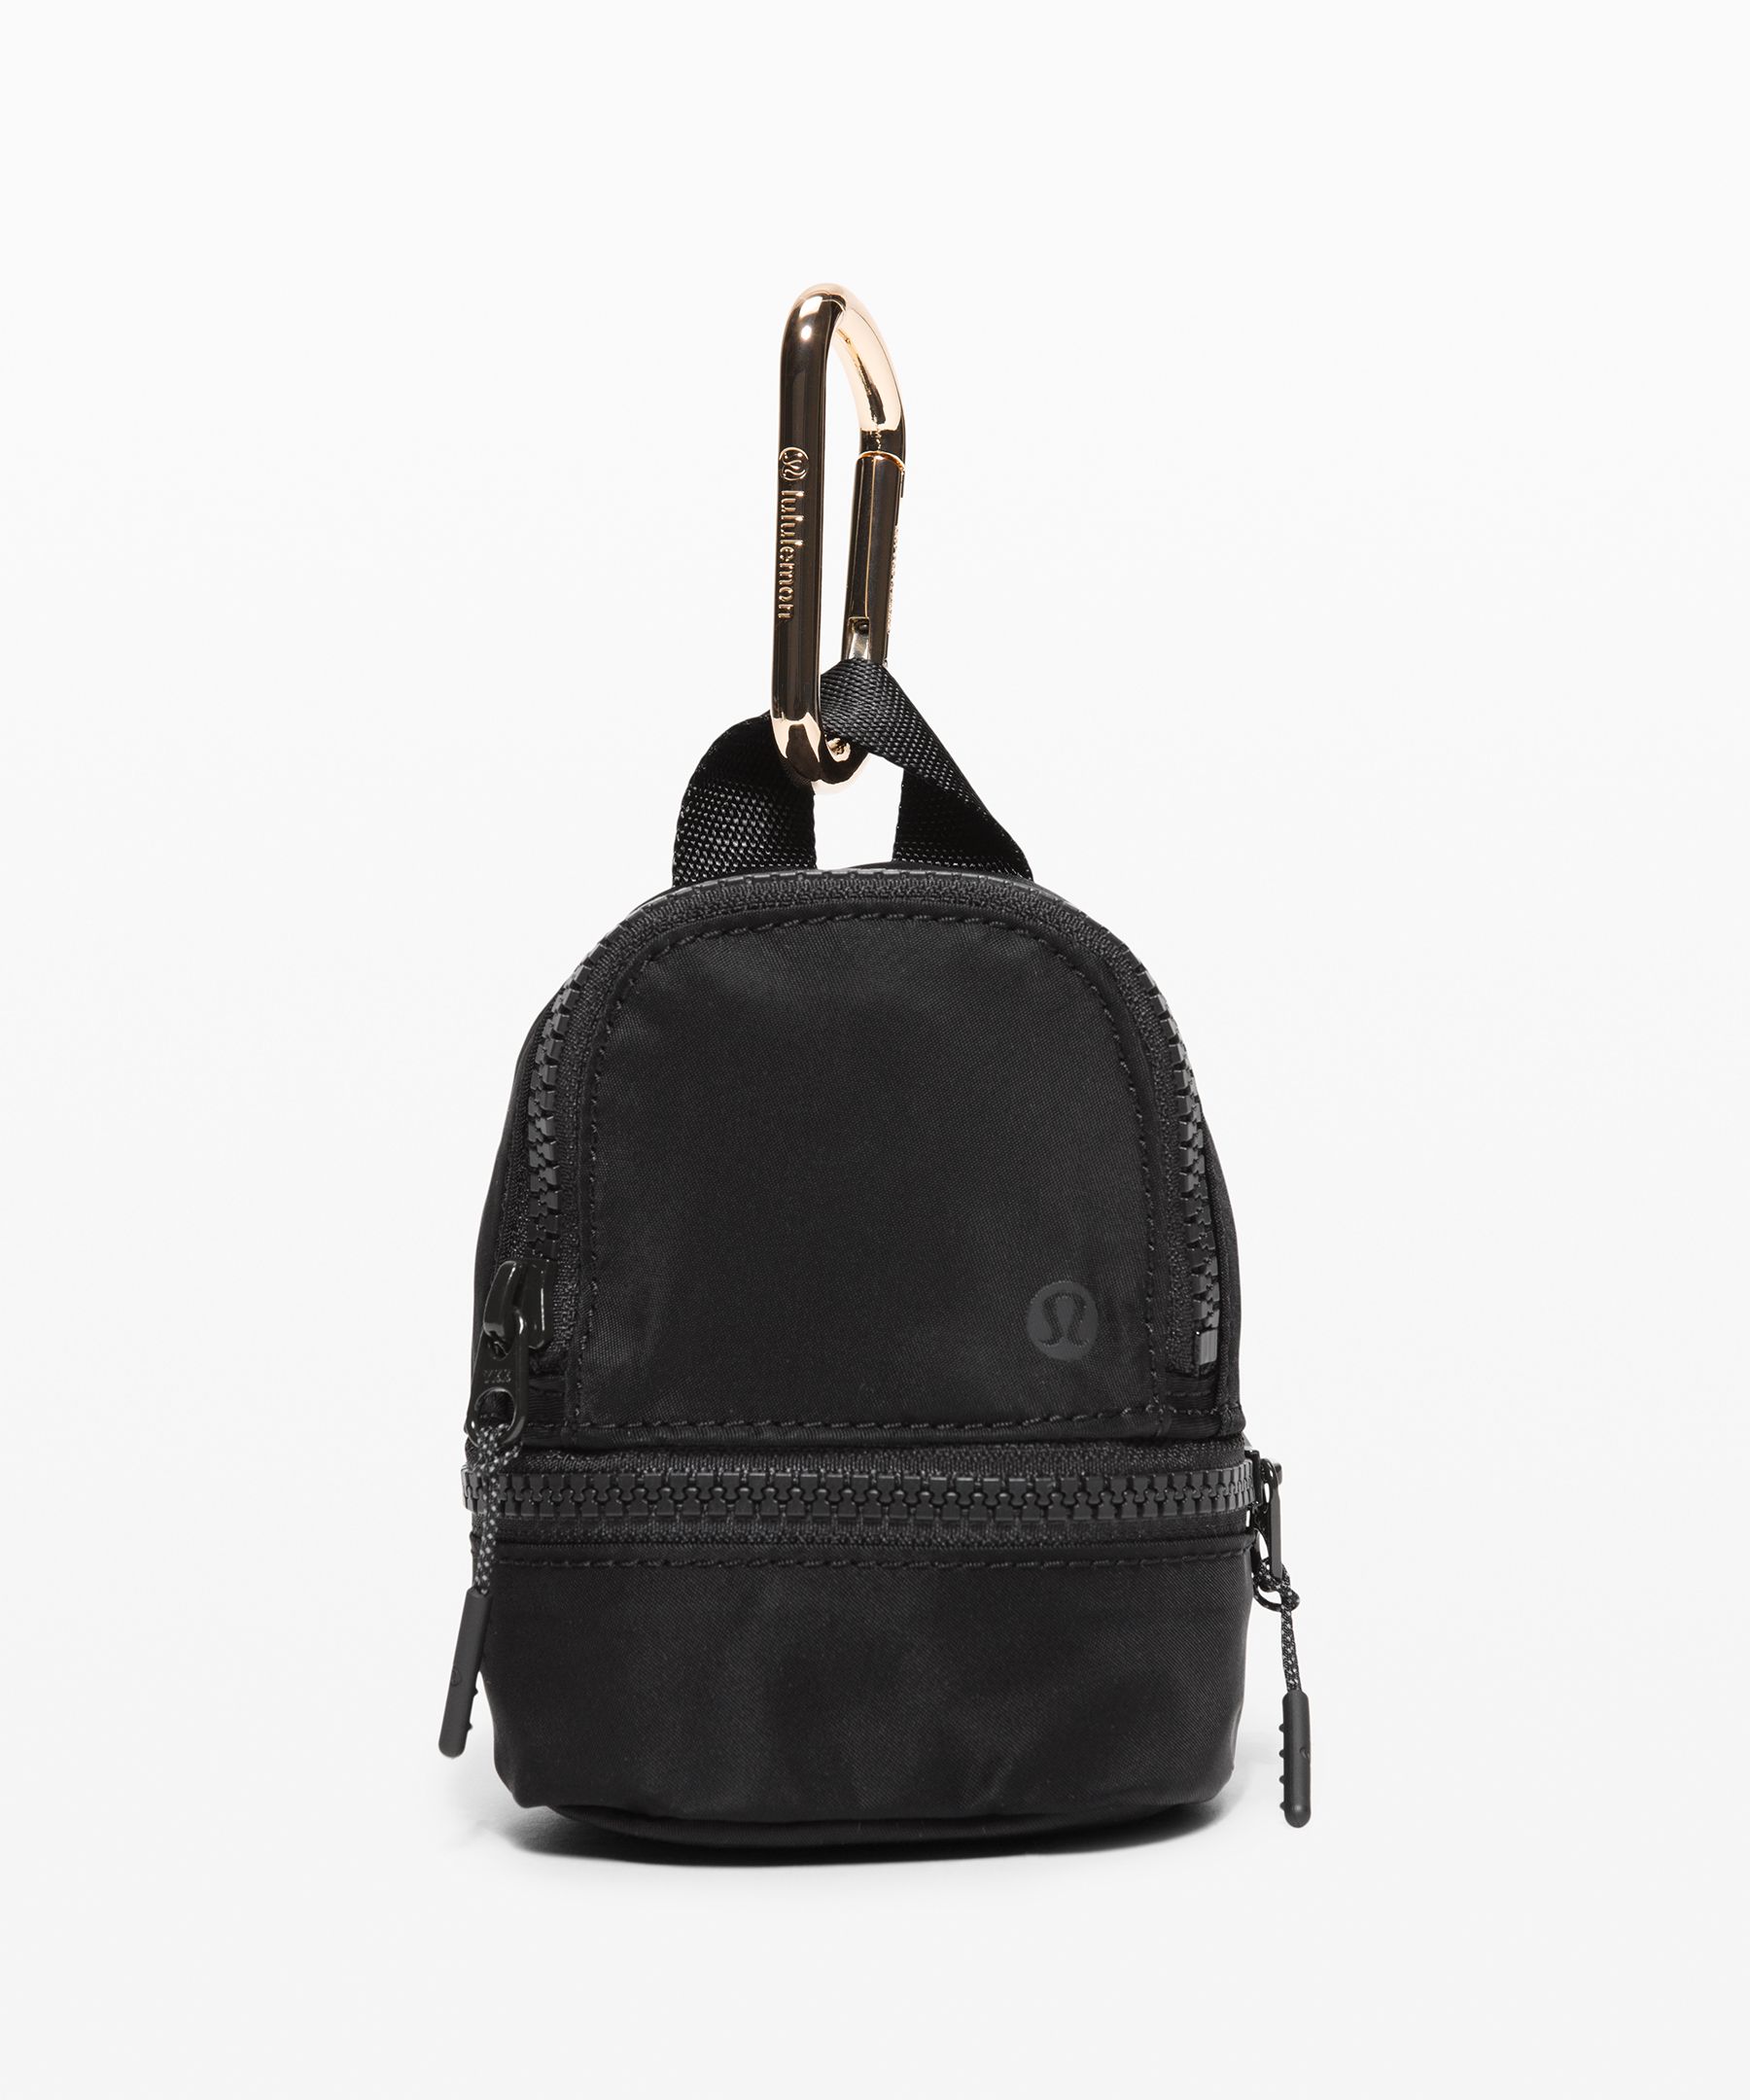 lululemon backpack purse